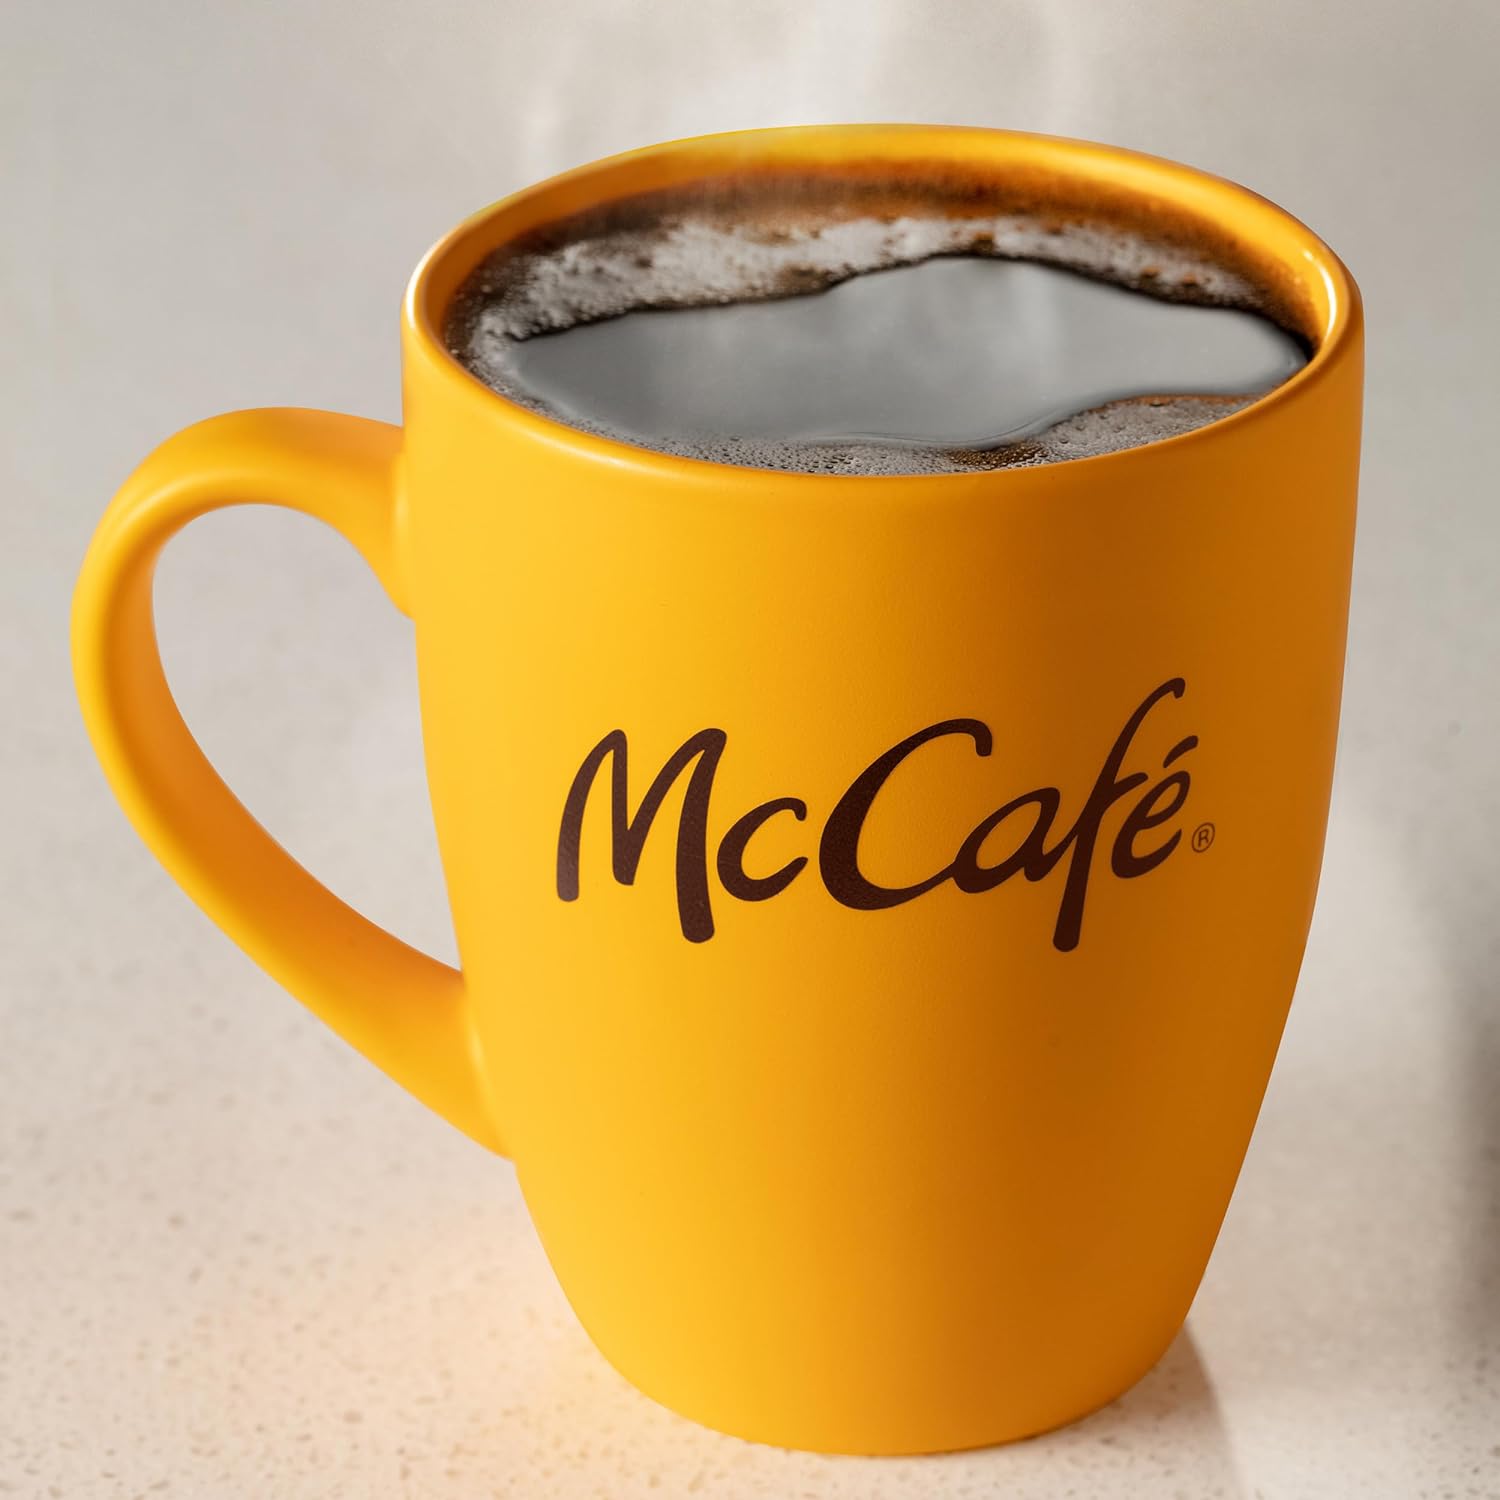 McCafe Premium Roast Coffee, Single Serve Keurig K-Cup Pods, Medium Roast, 72 Count (6 Packs of 12) : Everything Else